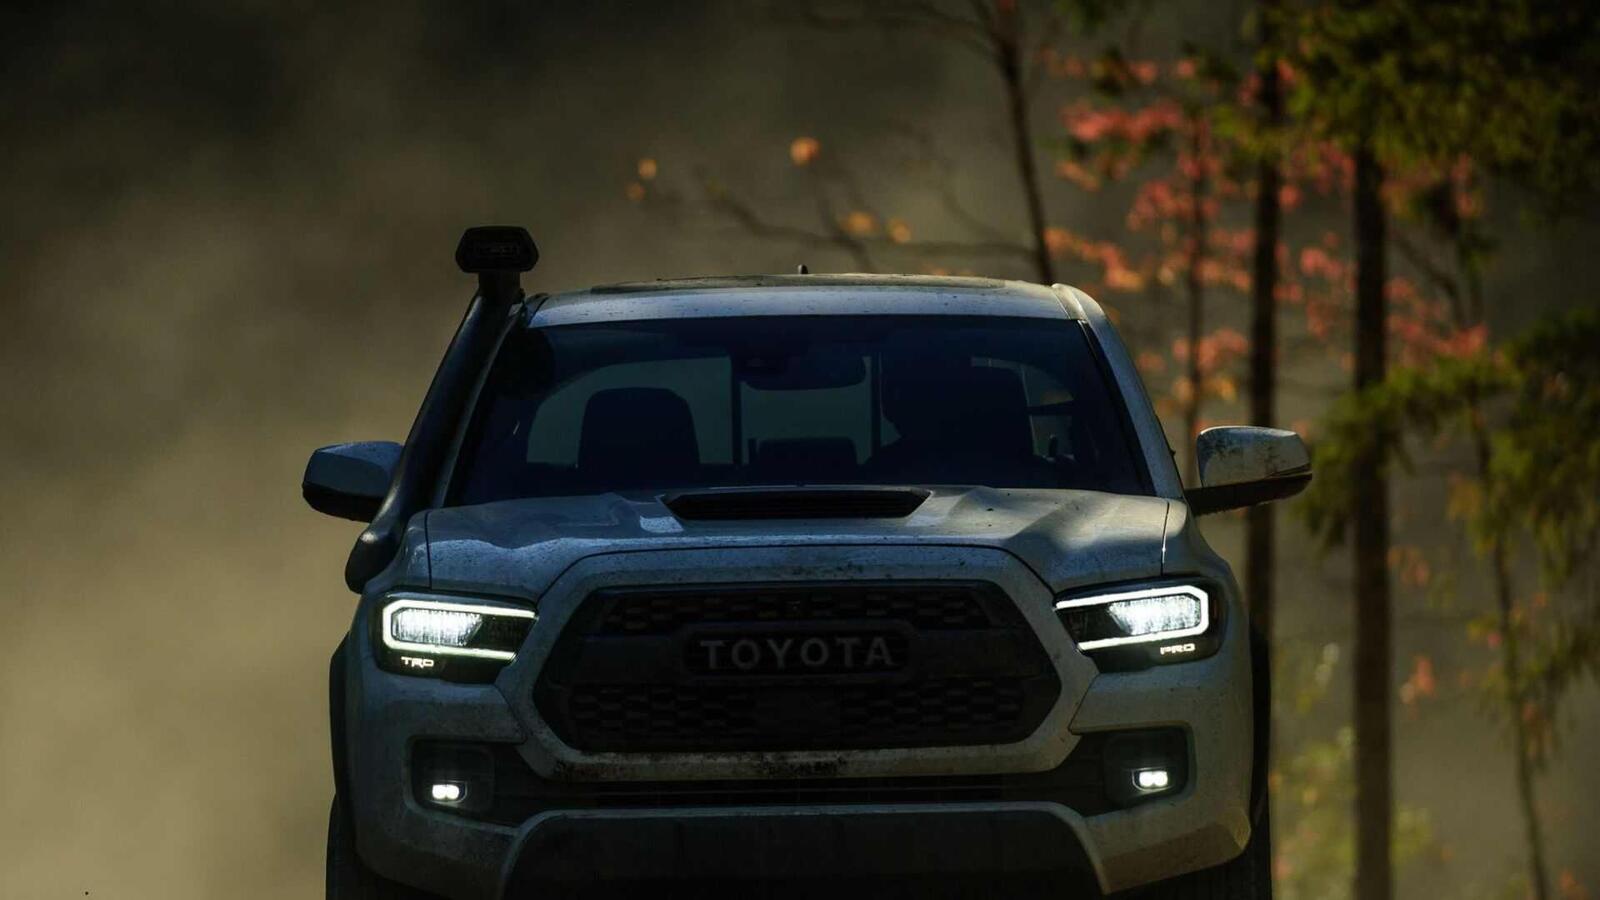 Xem trước bán tải Toyota Tacoma 2020 mới trước ngày ra mắt đối thủ đáng gờm Ford Ranger - Hình 13